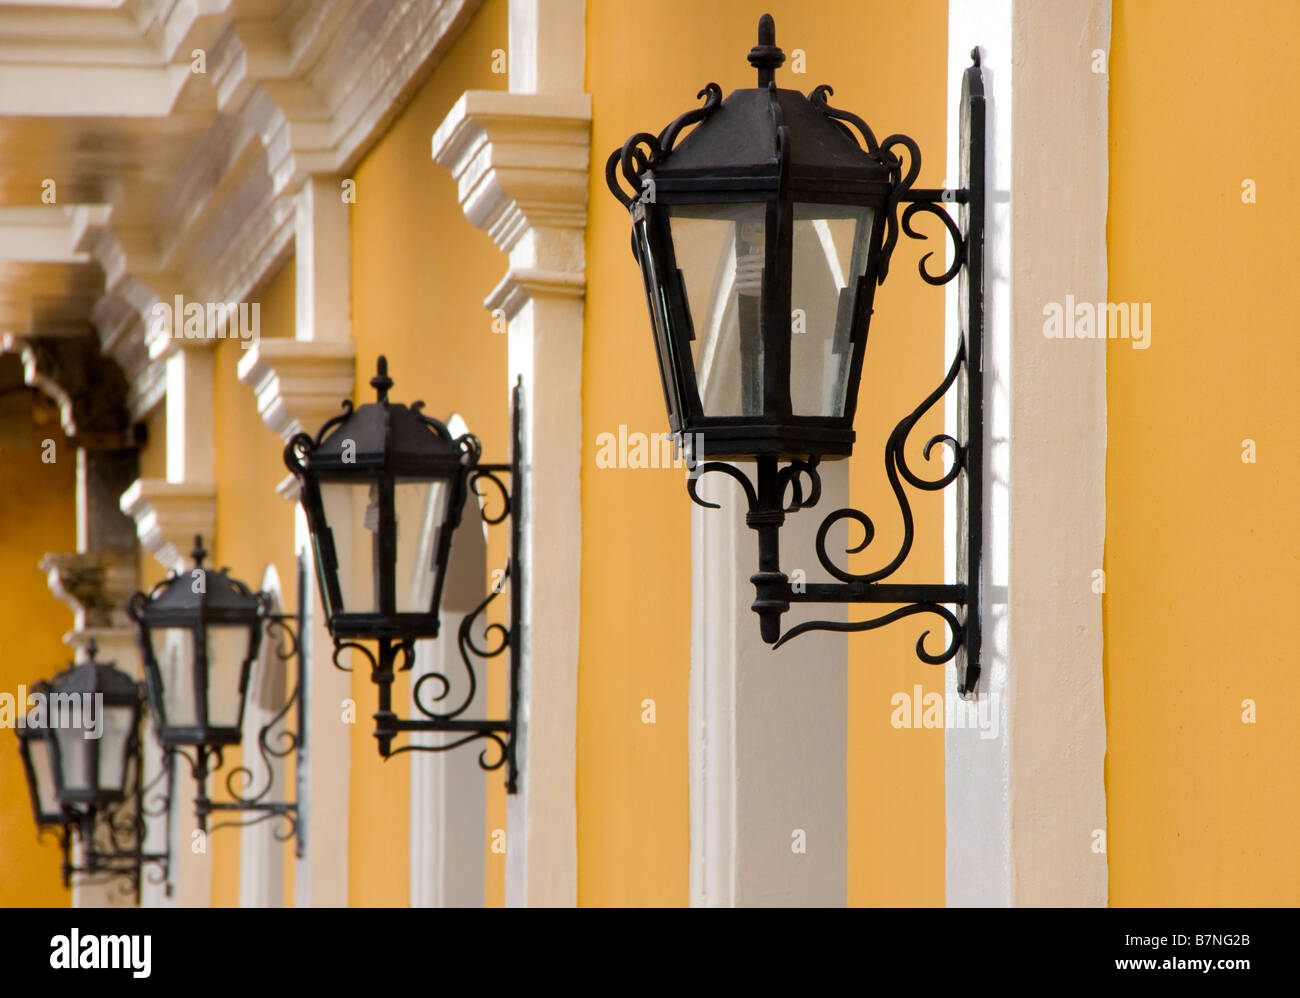 Colonial Granada architecture, Hotel La Gran Francia wrougtht iron lamps Stock Photo